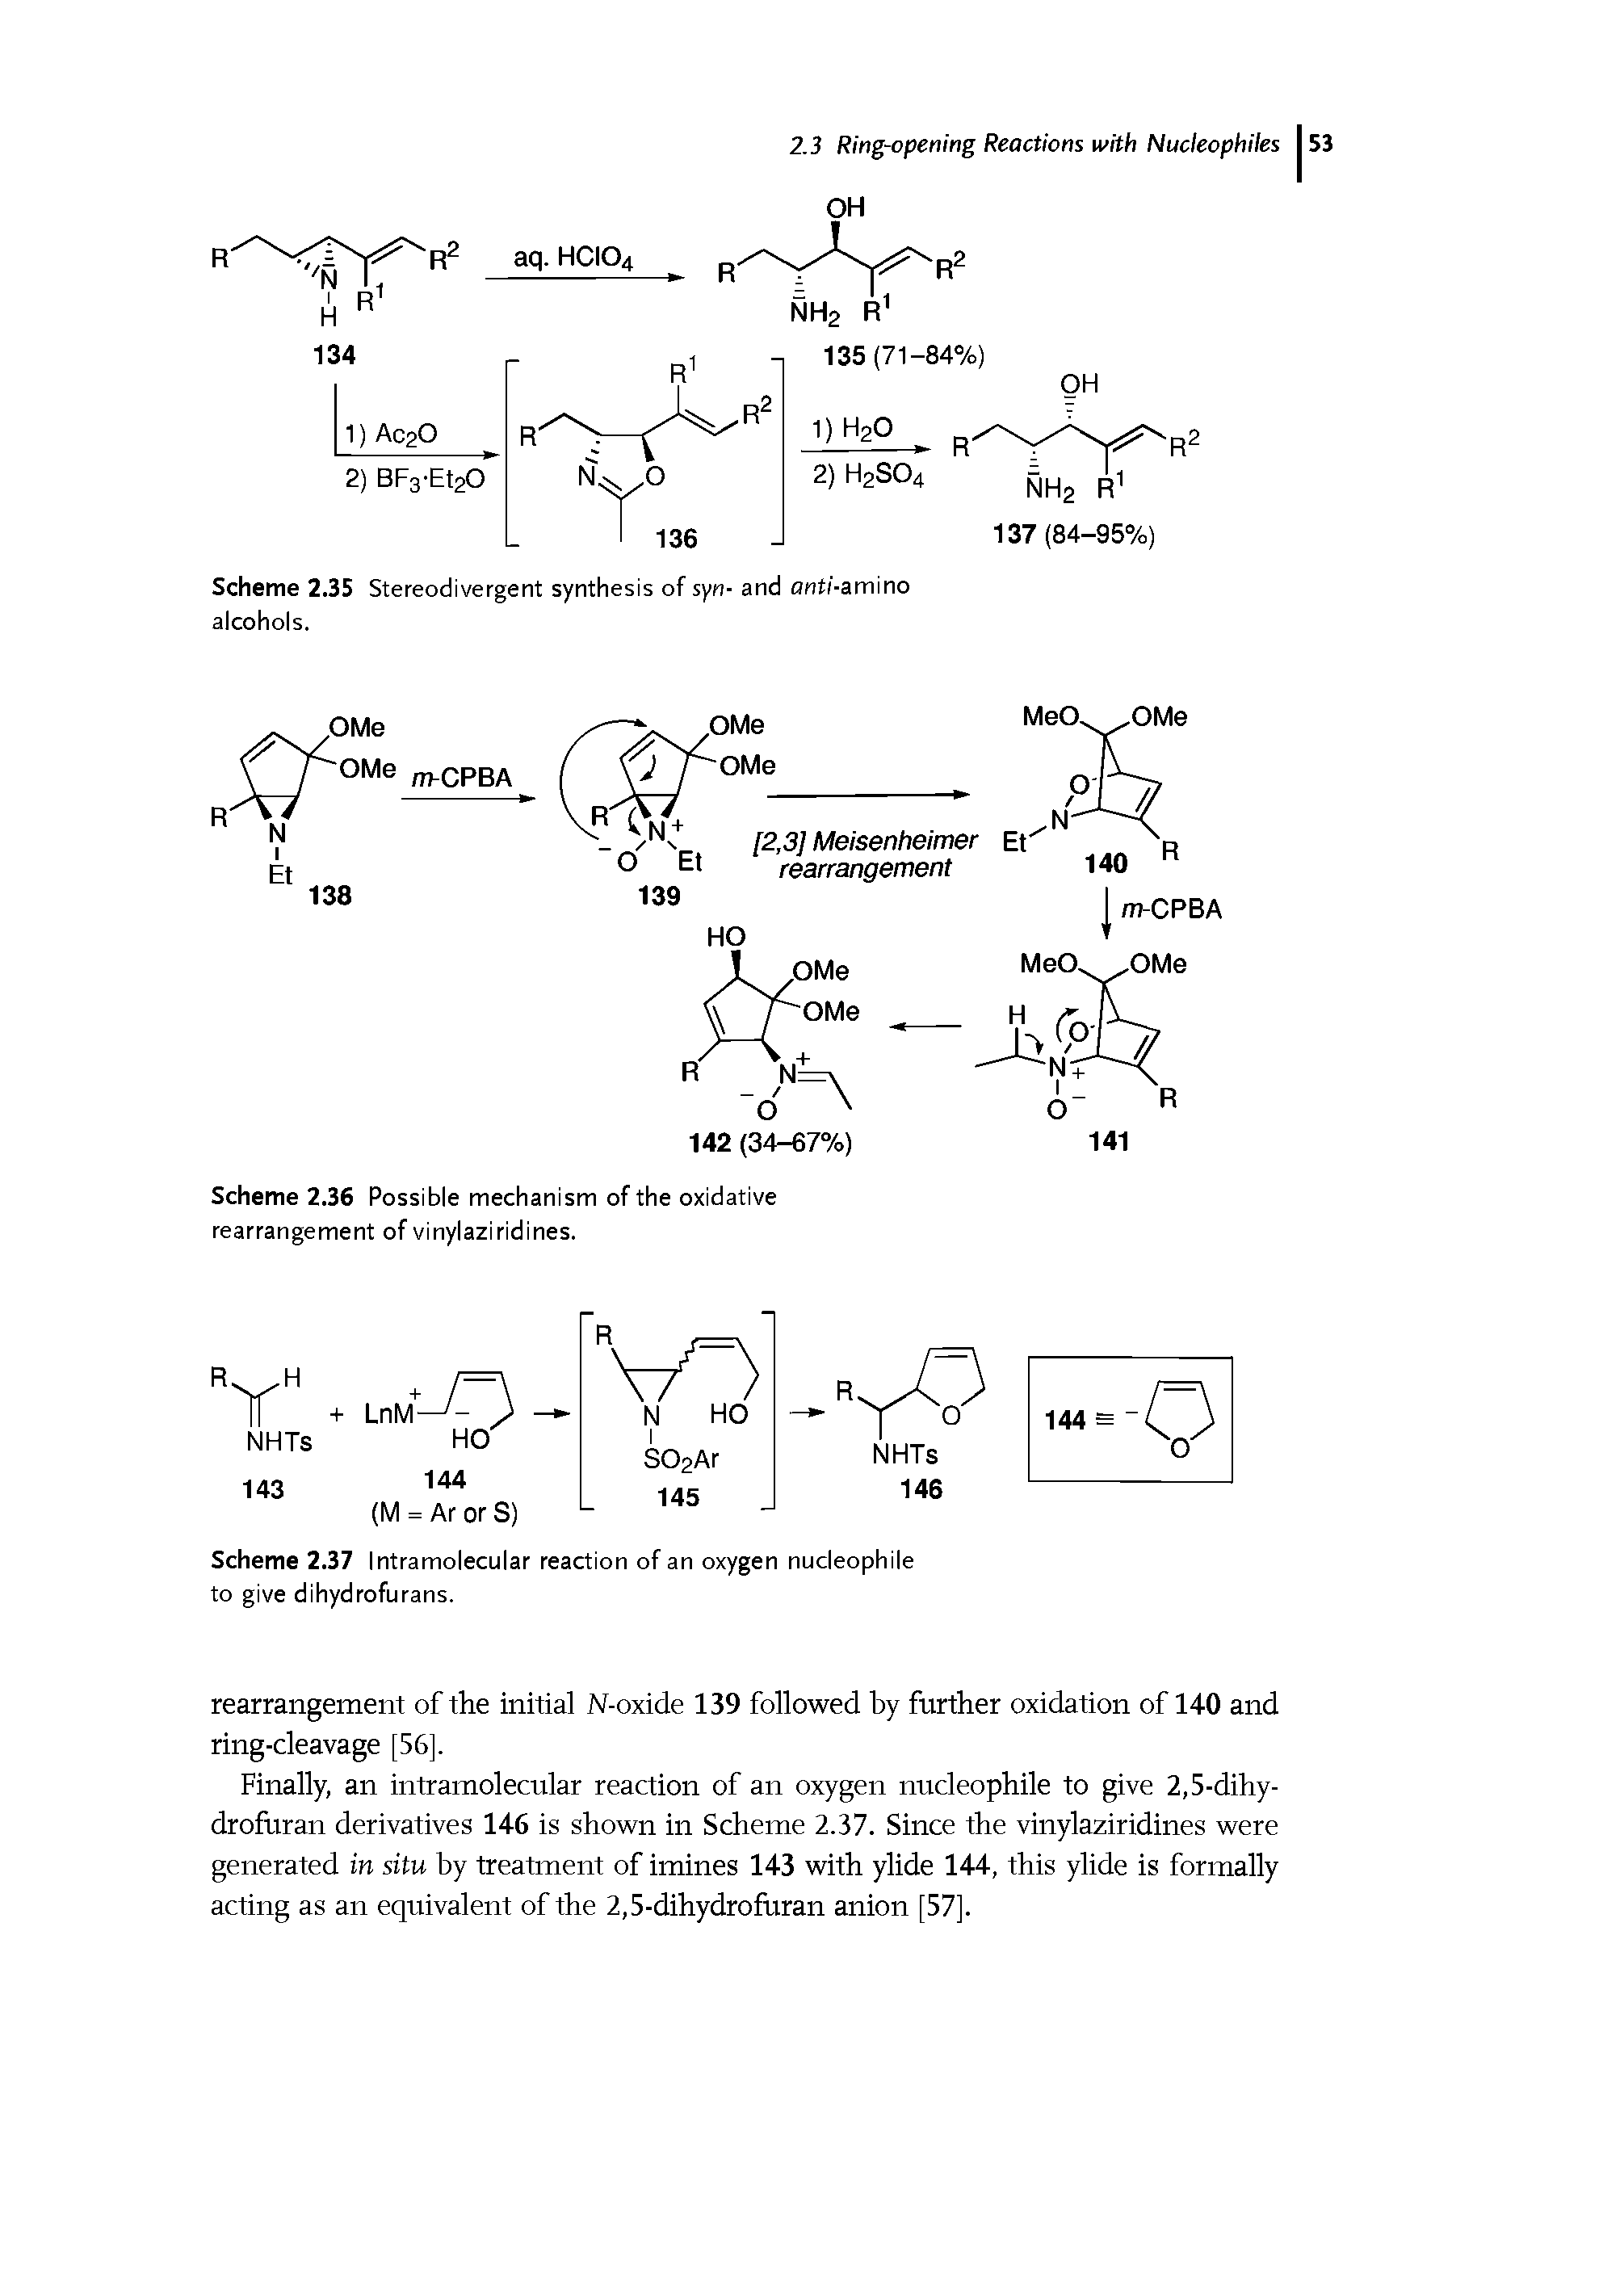 Scheme 2.36 Possible mechanism of the oxidative rearrangement of vinylaziridines.